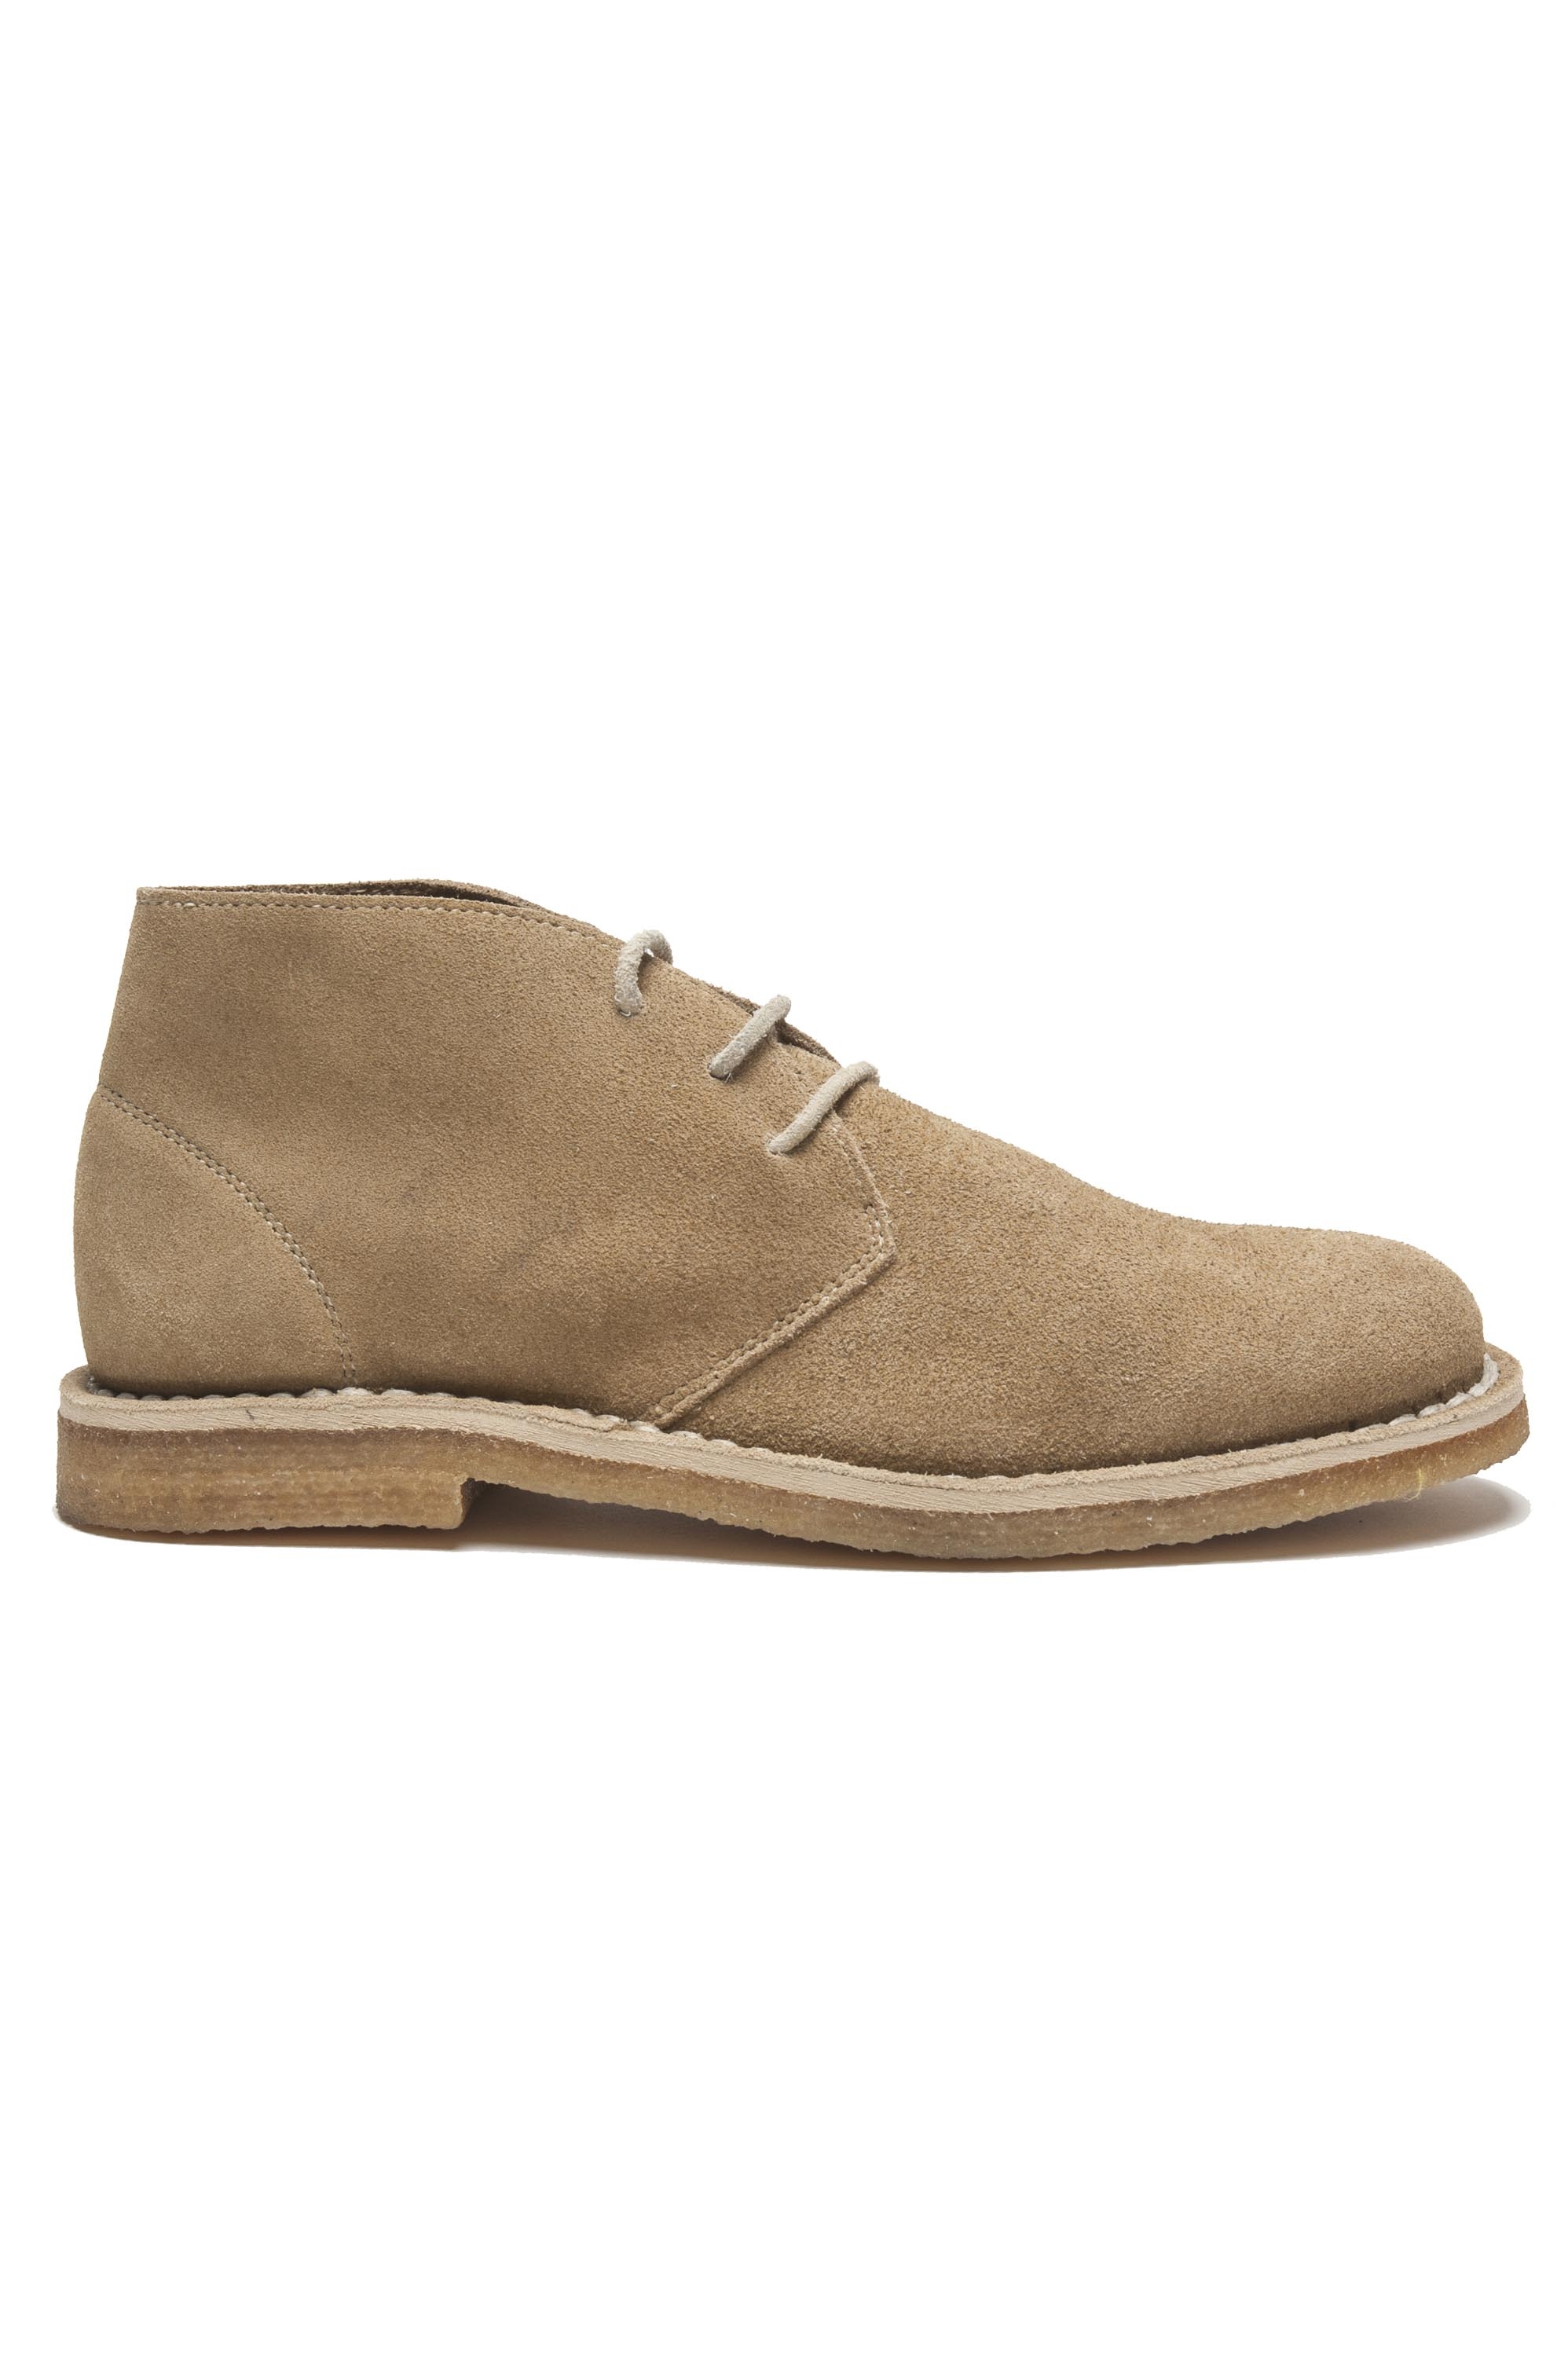 SBU 01515 Classic mid top desert boots in beige suede calfskin leather 01